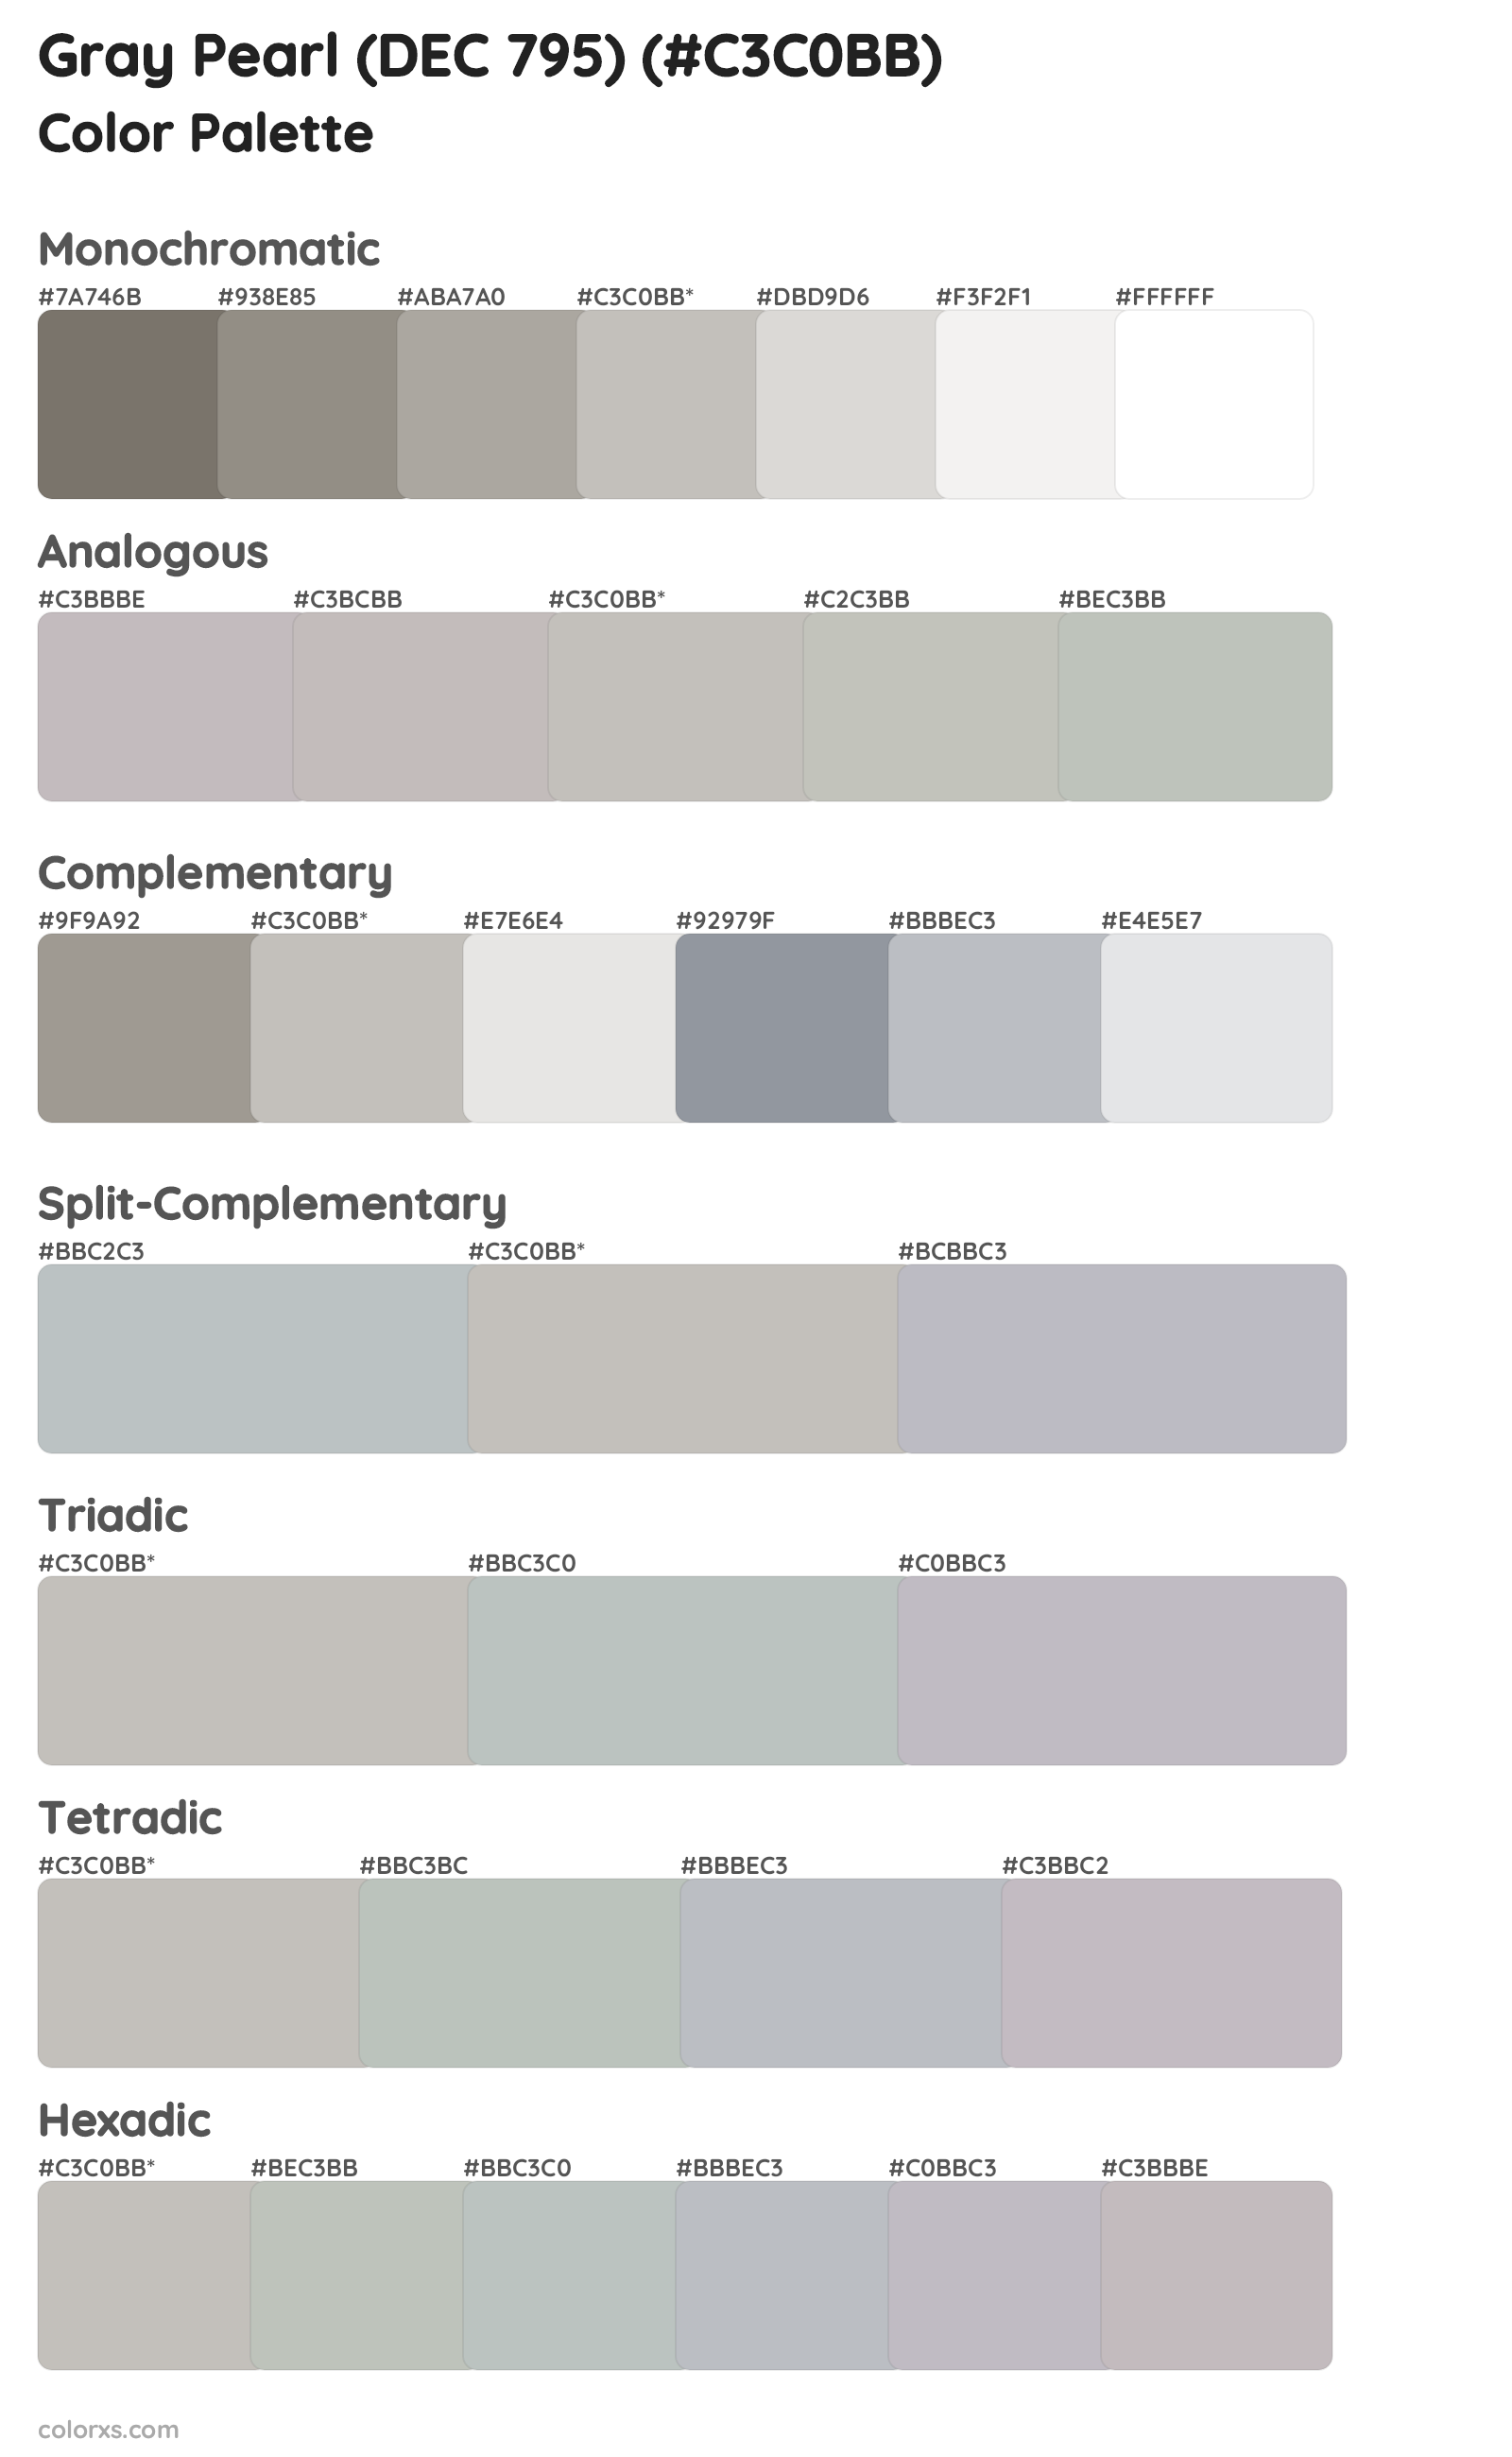 Gray Pearl (DEC 795) Color Scheme Palettes